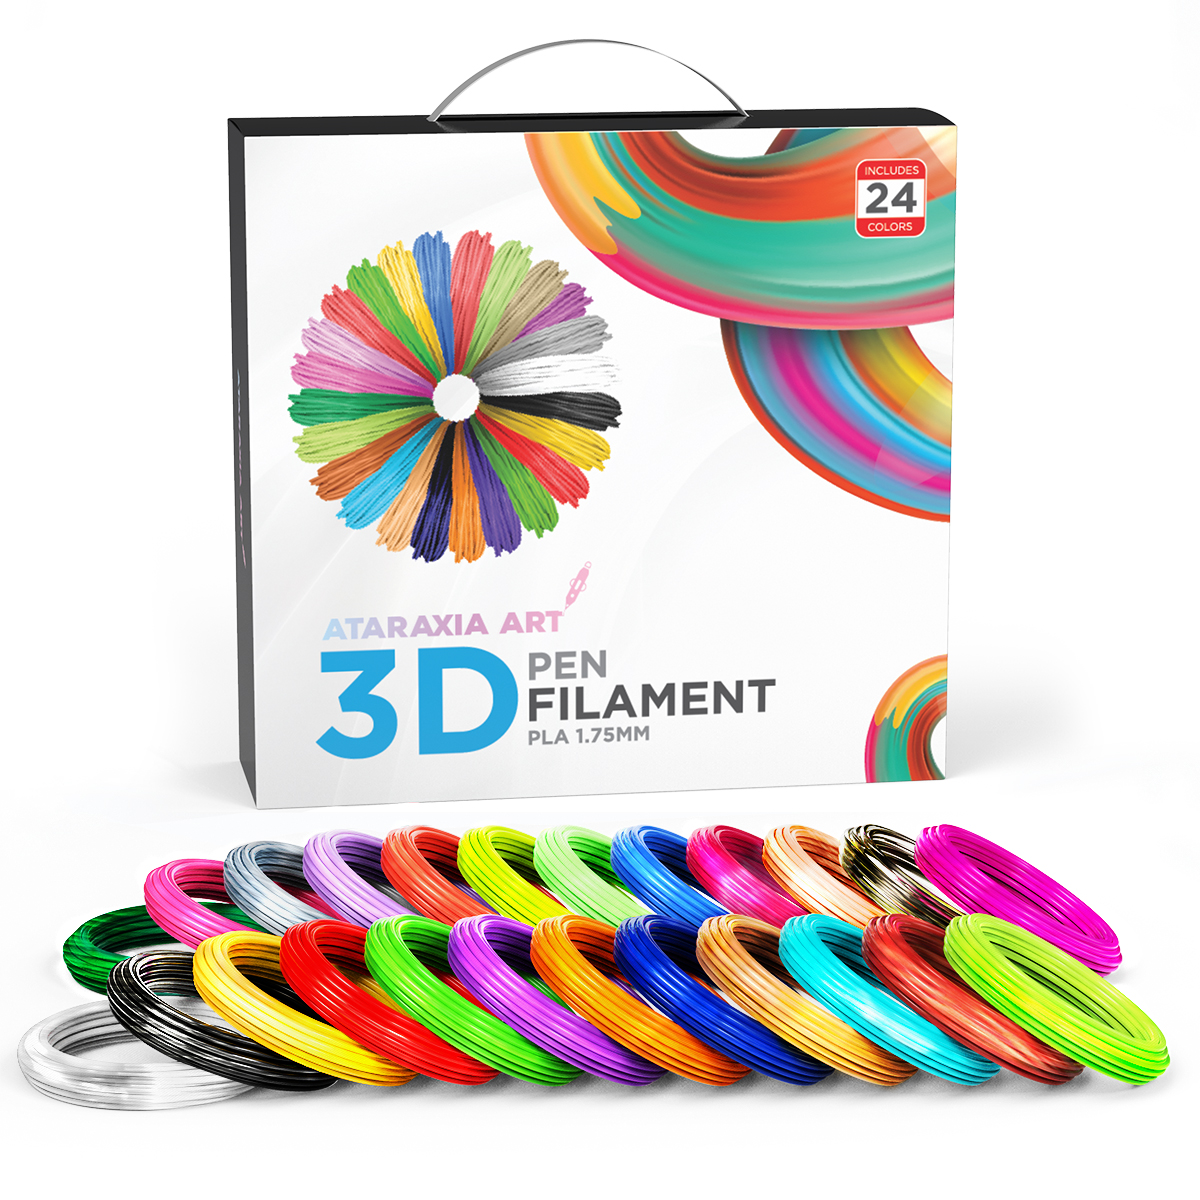 3D Pen Filament Refills, The 3Doodler Filament Finder